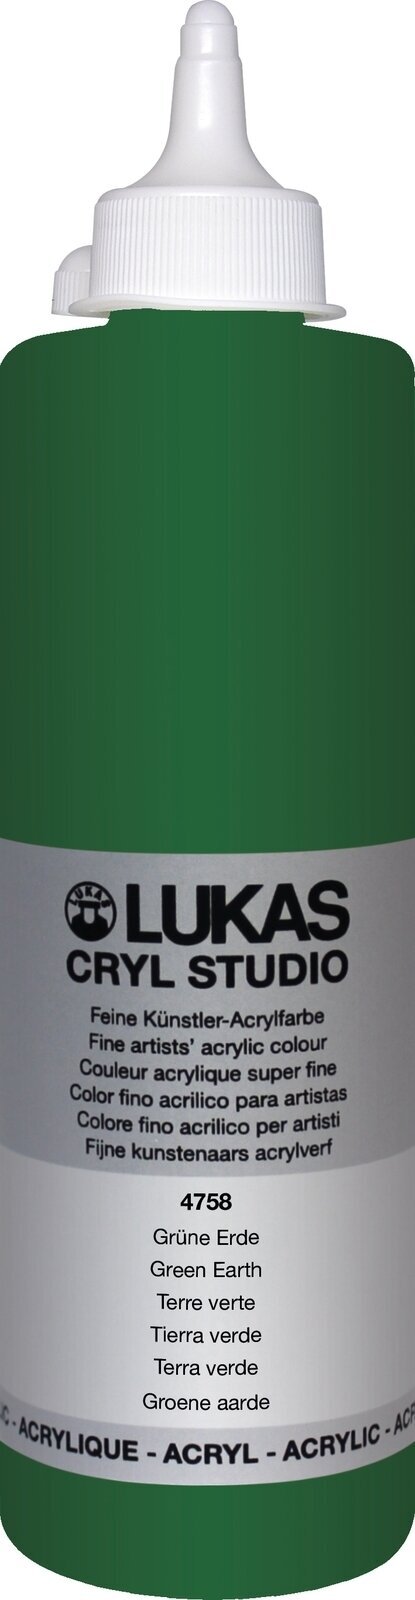 Pintura acrílica Lukas Cryl Studio Acrylic Paint 500 ml Green Earth Pintura acrílica